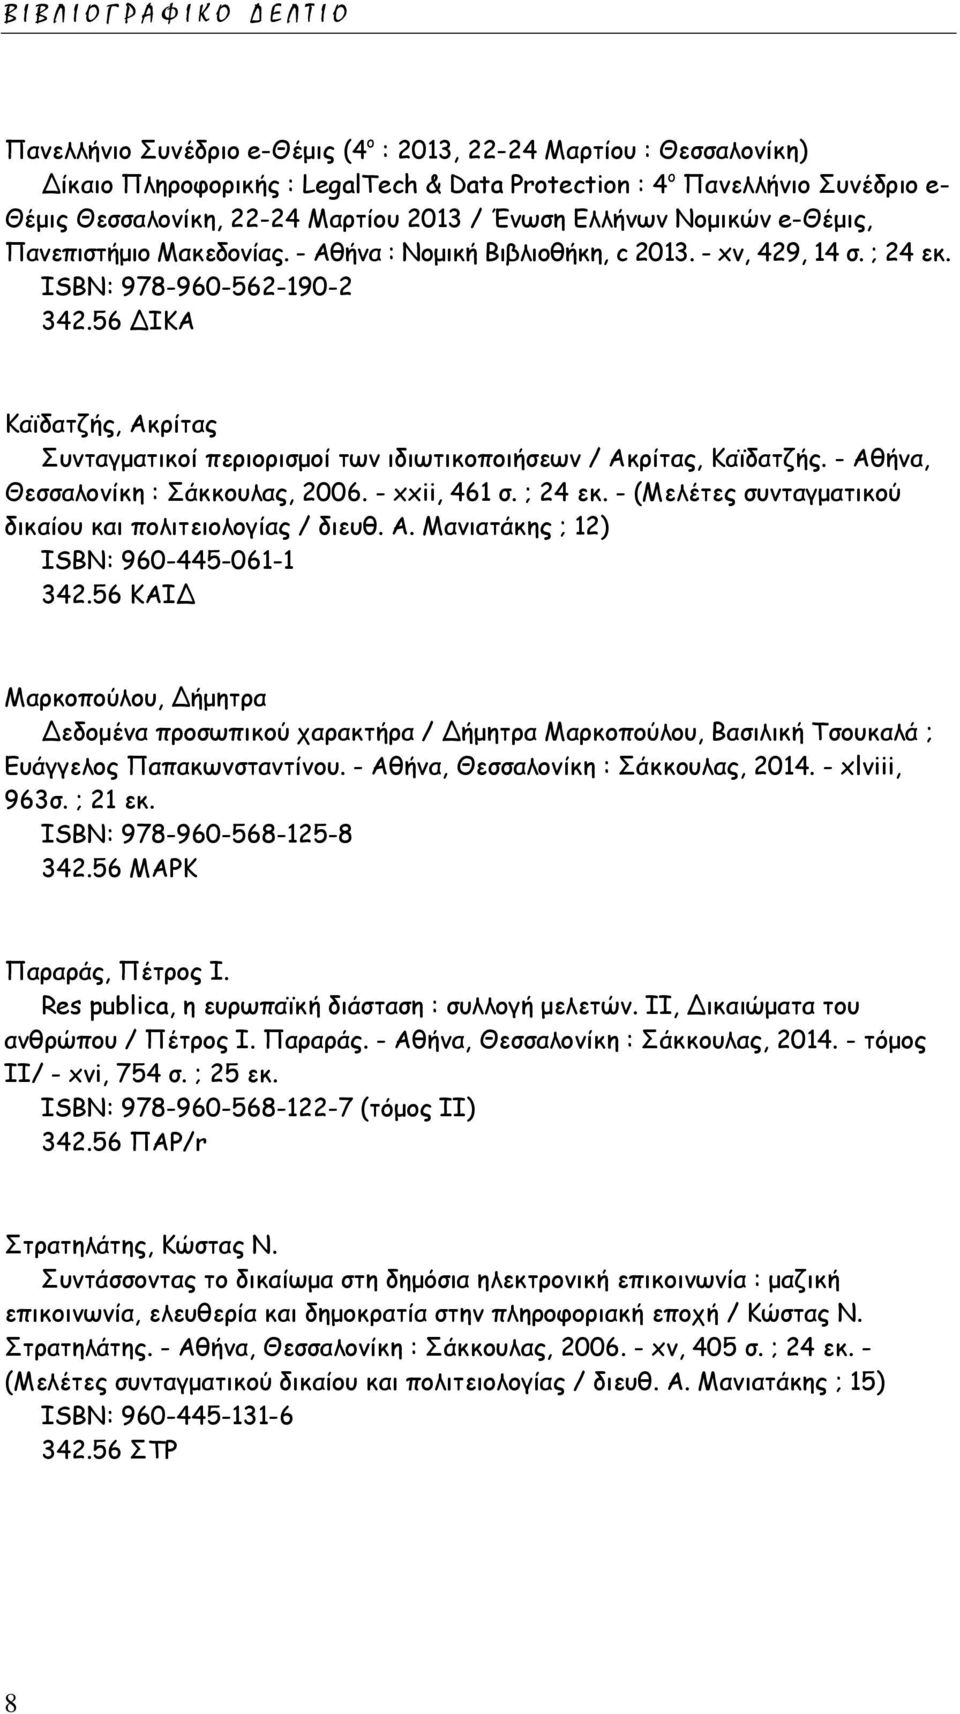 56 ΔΙΚΑ Καϊδατζής, Ακρίτας Συνταγματικοί περιορισμοί των ιδιωτικοποιήσεων / Ακρίτας, Καϊδατζής. - Αθήνα, Θεσσαλονίκη : Σάκκουλας, 2006. - xxii, 461 σ. ; 24 εκ.